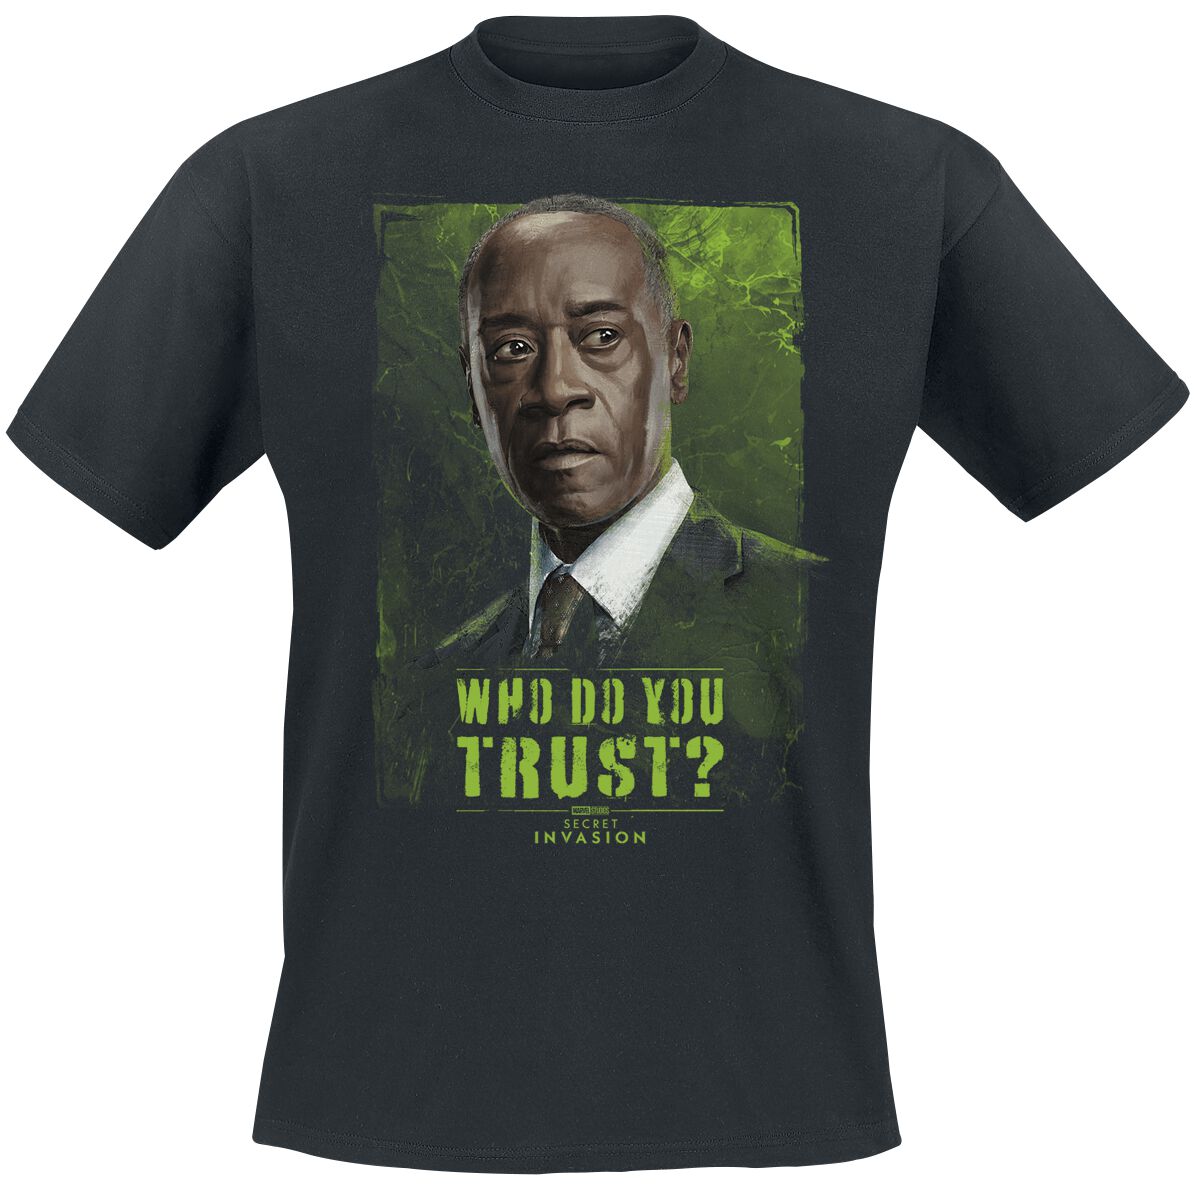 Secret Invasion - Marvel T-Shirt - Who Do You Trust? James - S bis 3XL - für Männer - Größe 3XL - schwarz  - EMP exklusives Merchandise!